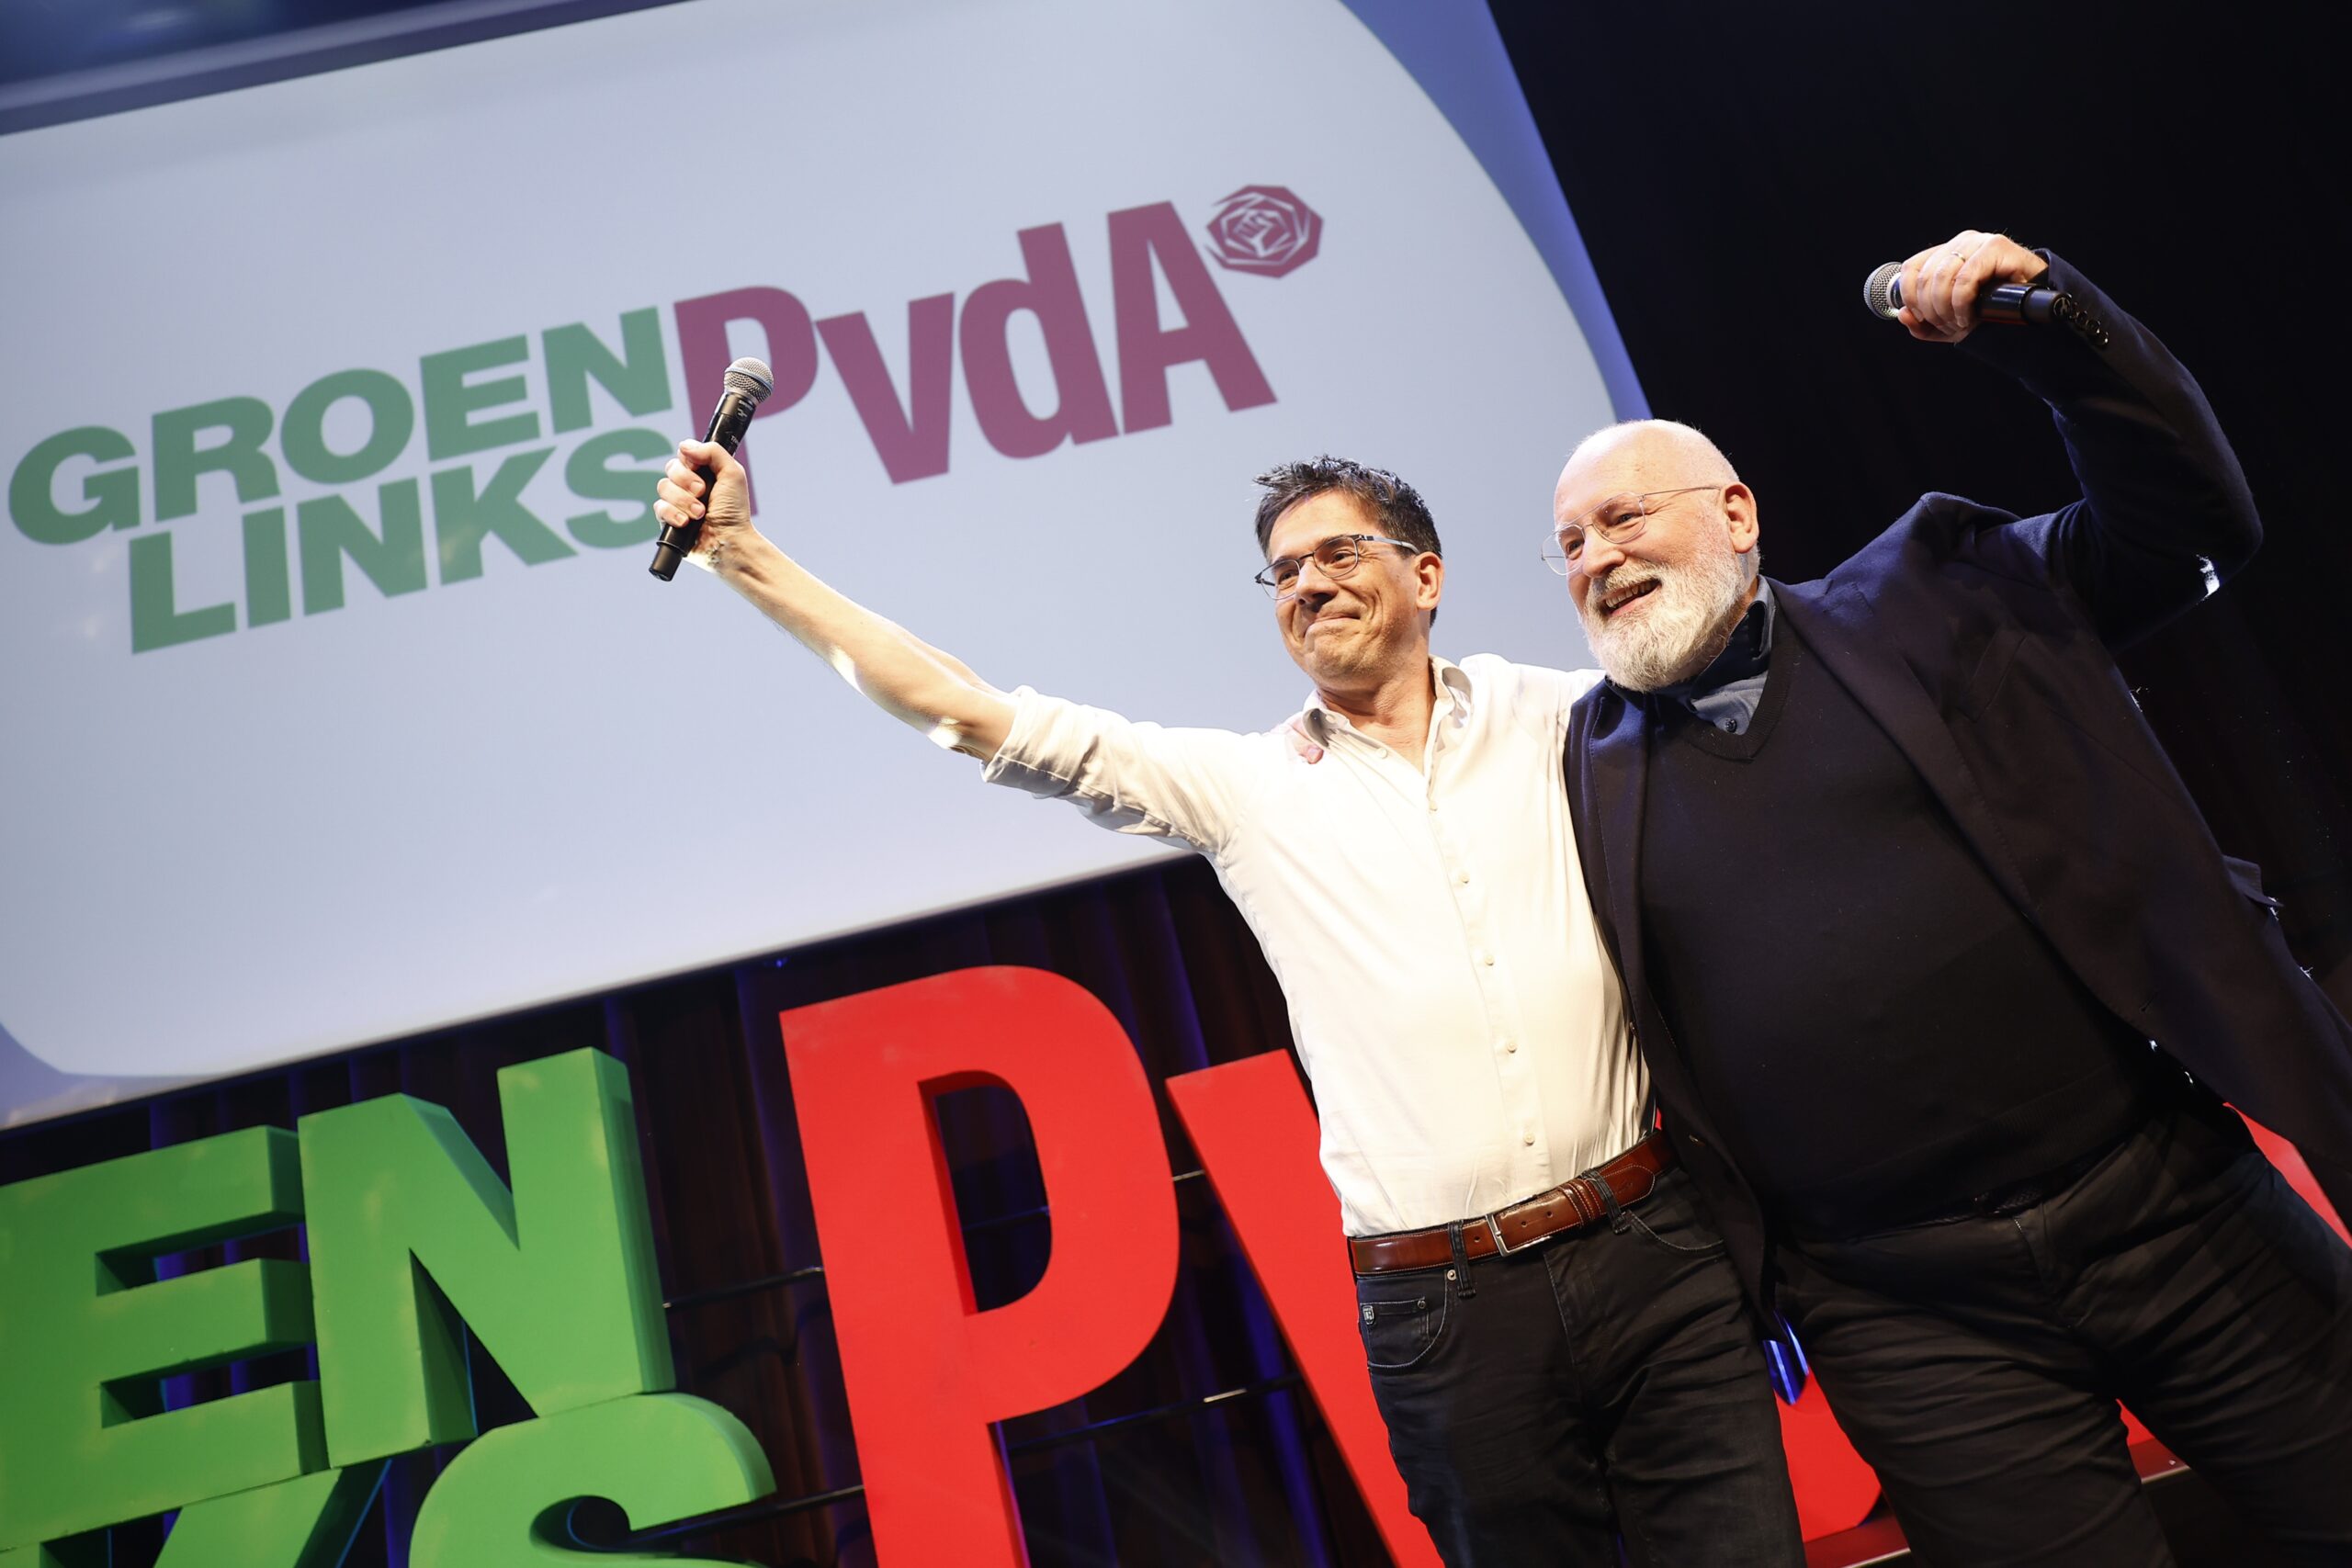 GroenLinks PvdA-lijsttrekker Bas Eickhout en partijleider Frans Timmermans reageren enthousiast op de Nederlandse exitpoll voor de Europese verkiezingen. 